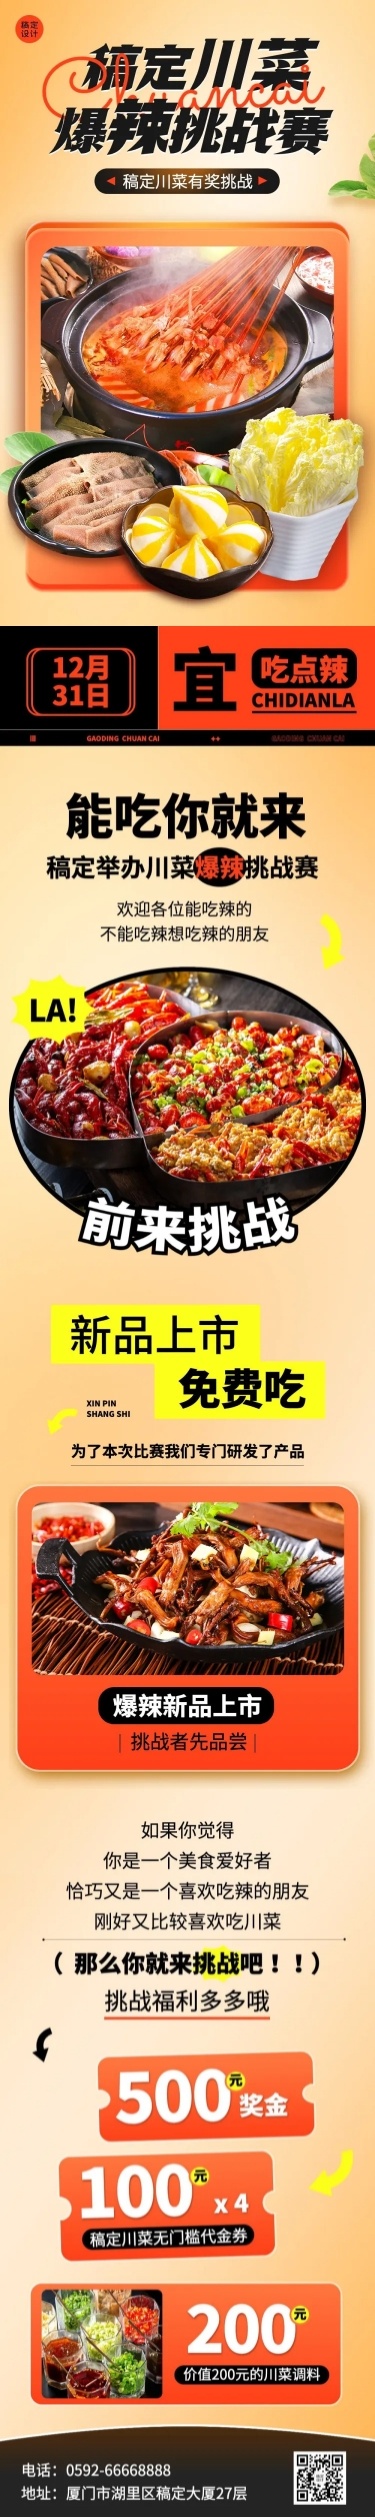 餐饮美食川菜/粤菜促销活动文章长图